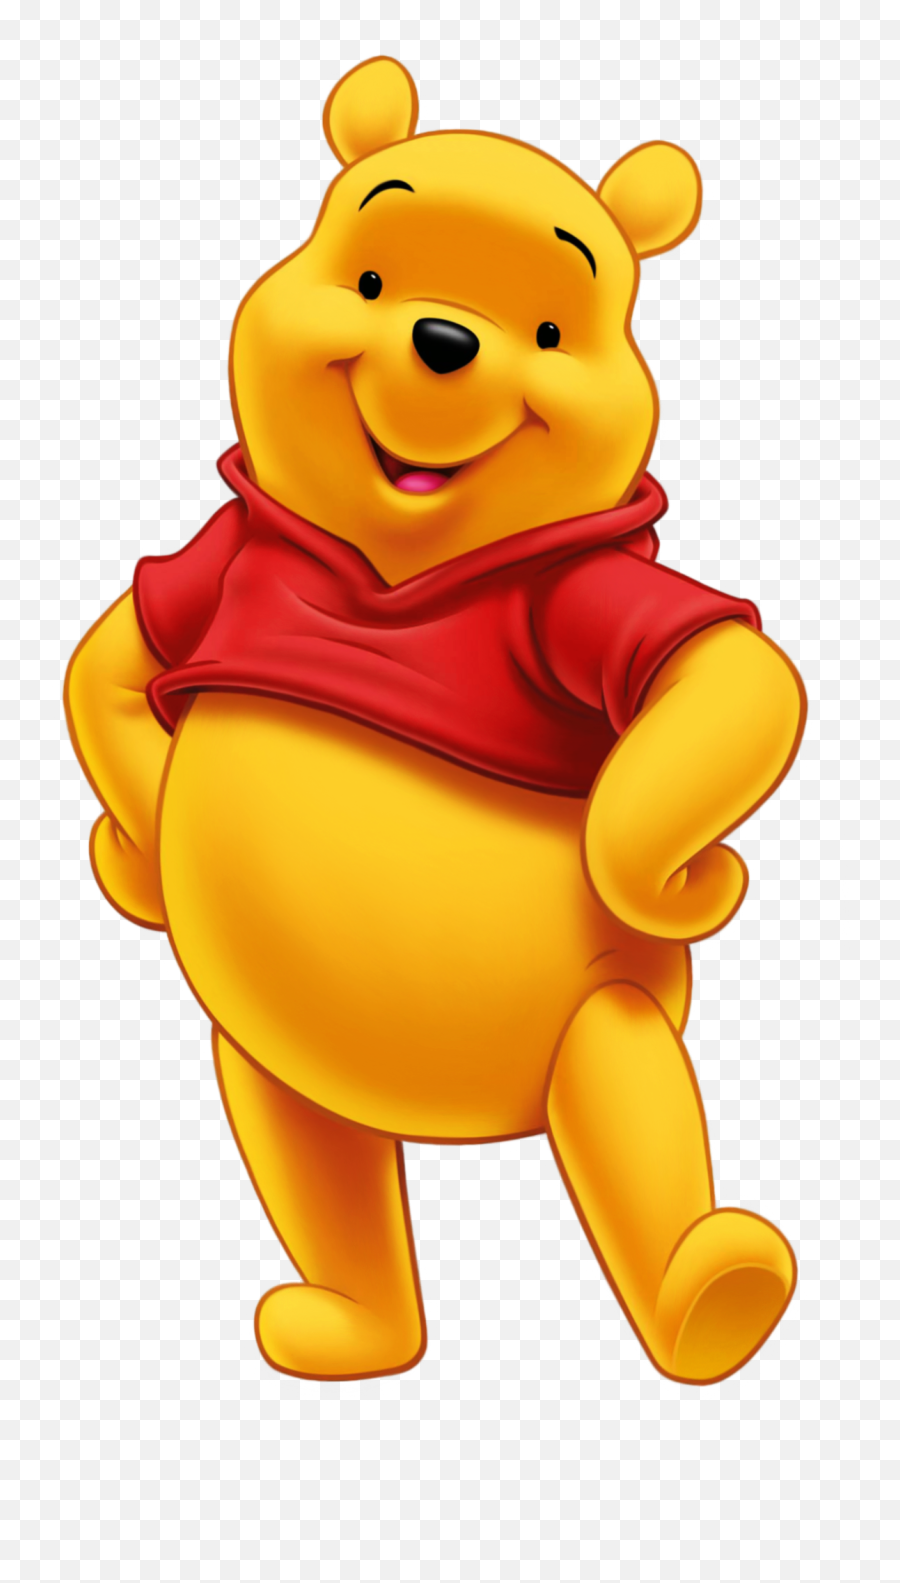 Winnie The Pooh - Winnie The Pooh Emoji,Classic Winnie The Pooh Clipart